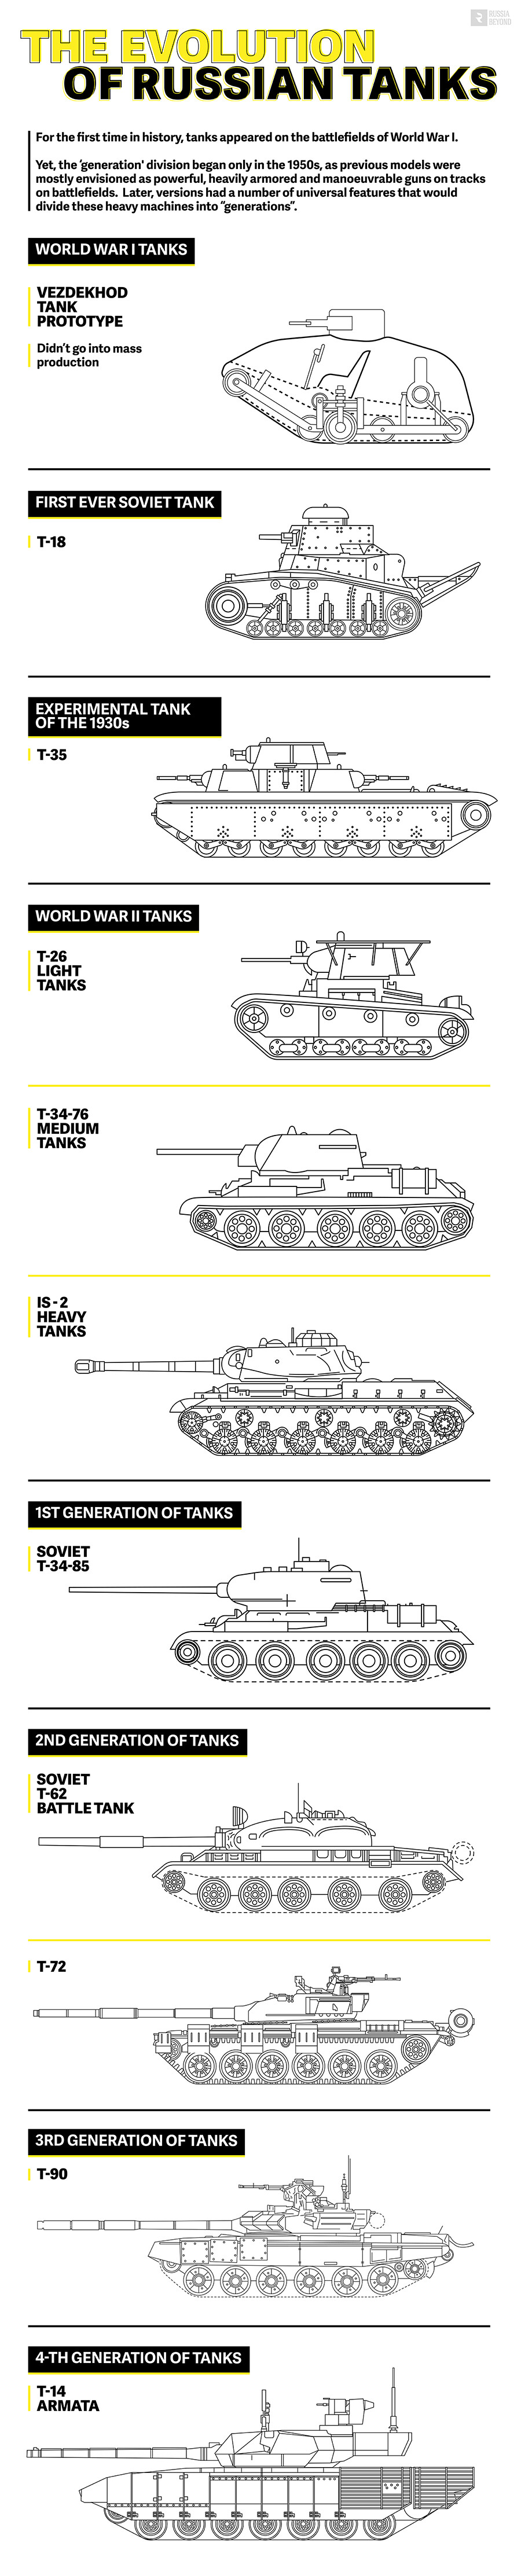 تطور الدبابات الروسية خلال القرنين ال 20-21 61eaf20196efb558524d8c4f